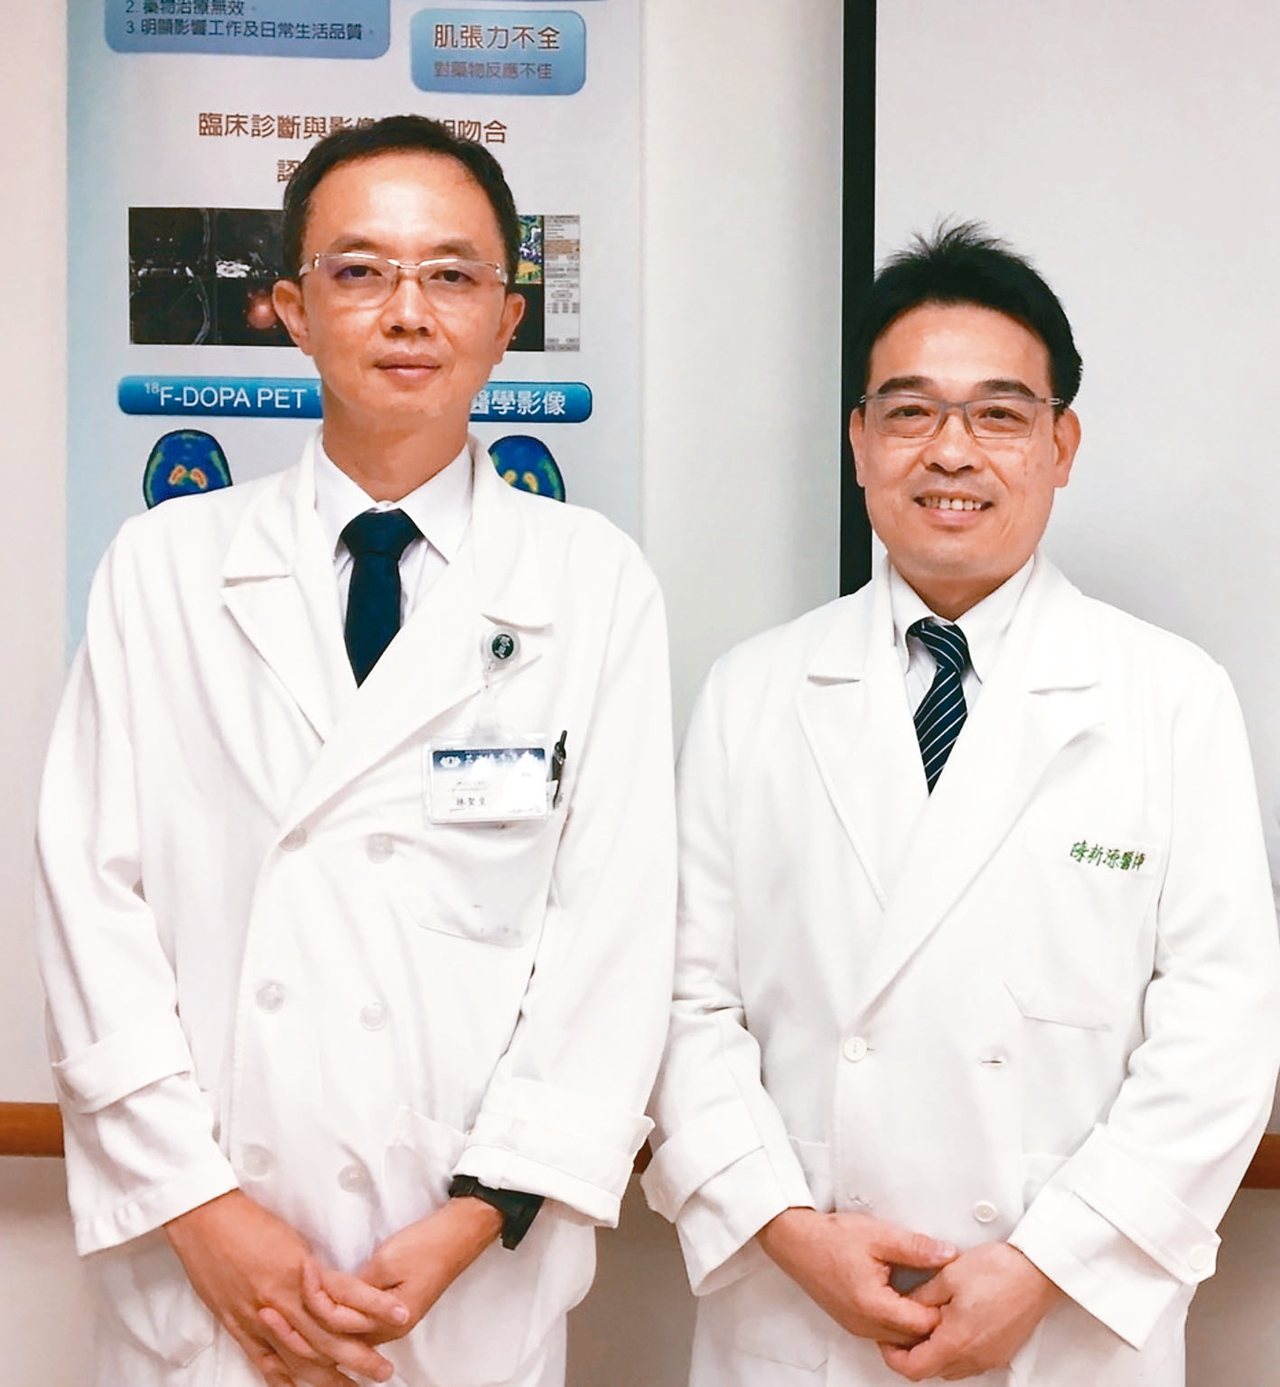 花蓮慈濟醫院神經內科醫師林聖皇(左)、神經外科醫師陳新源(右)。